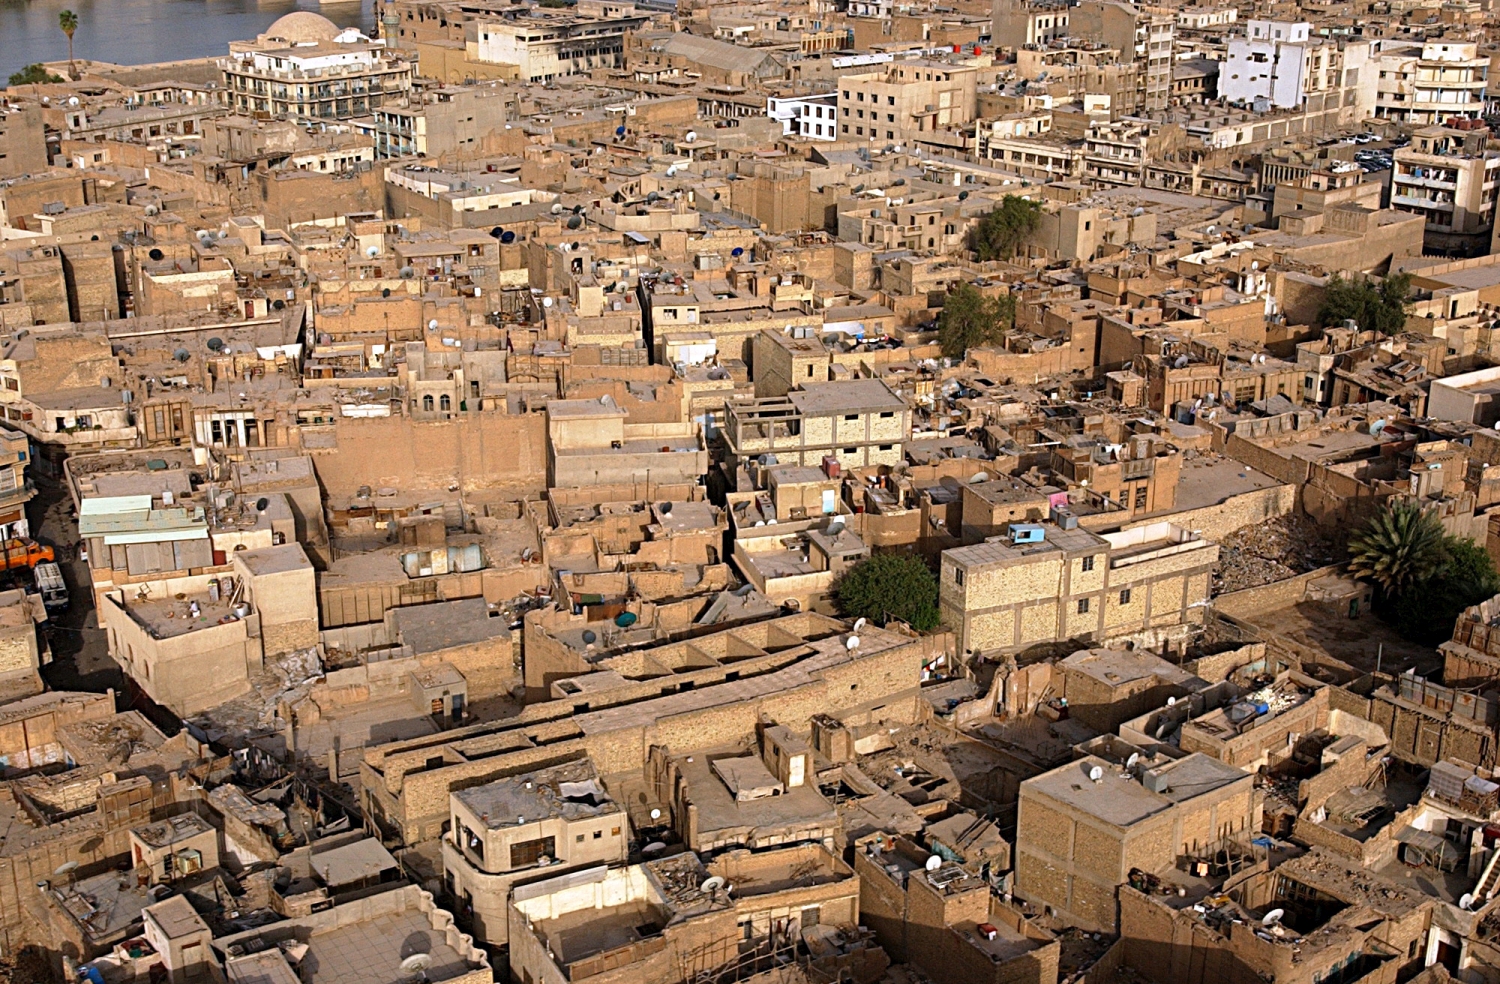  Baghdad - Bird's-eye view of central Baghdad urban fabric